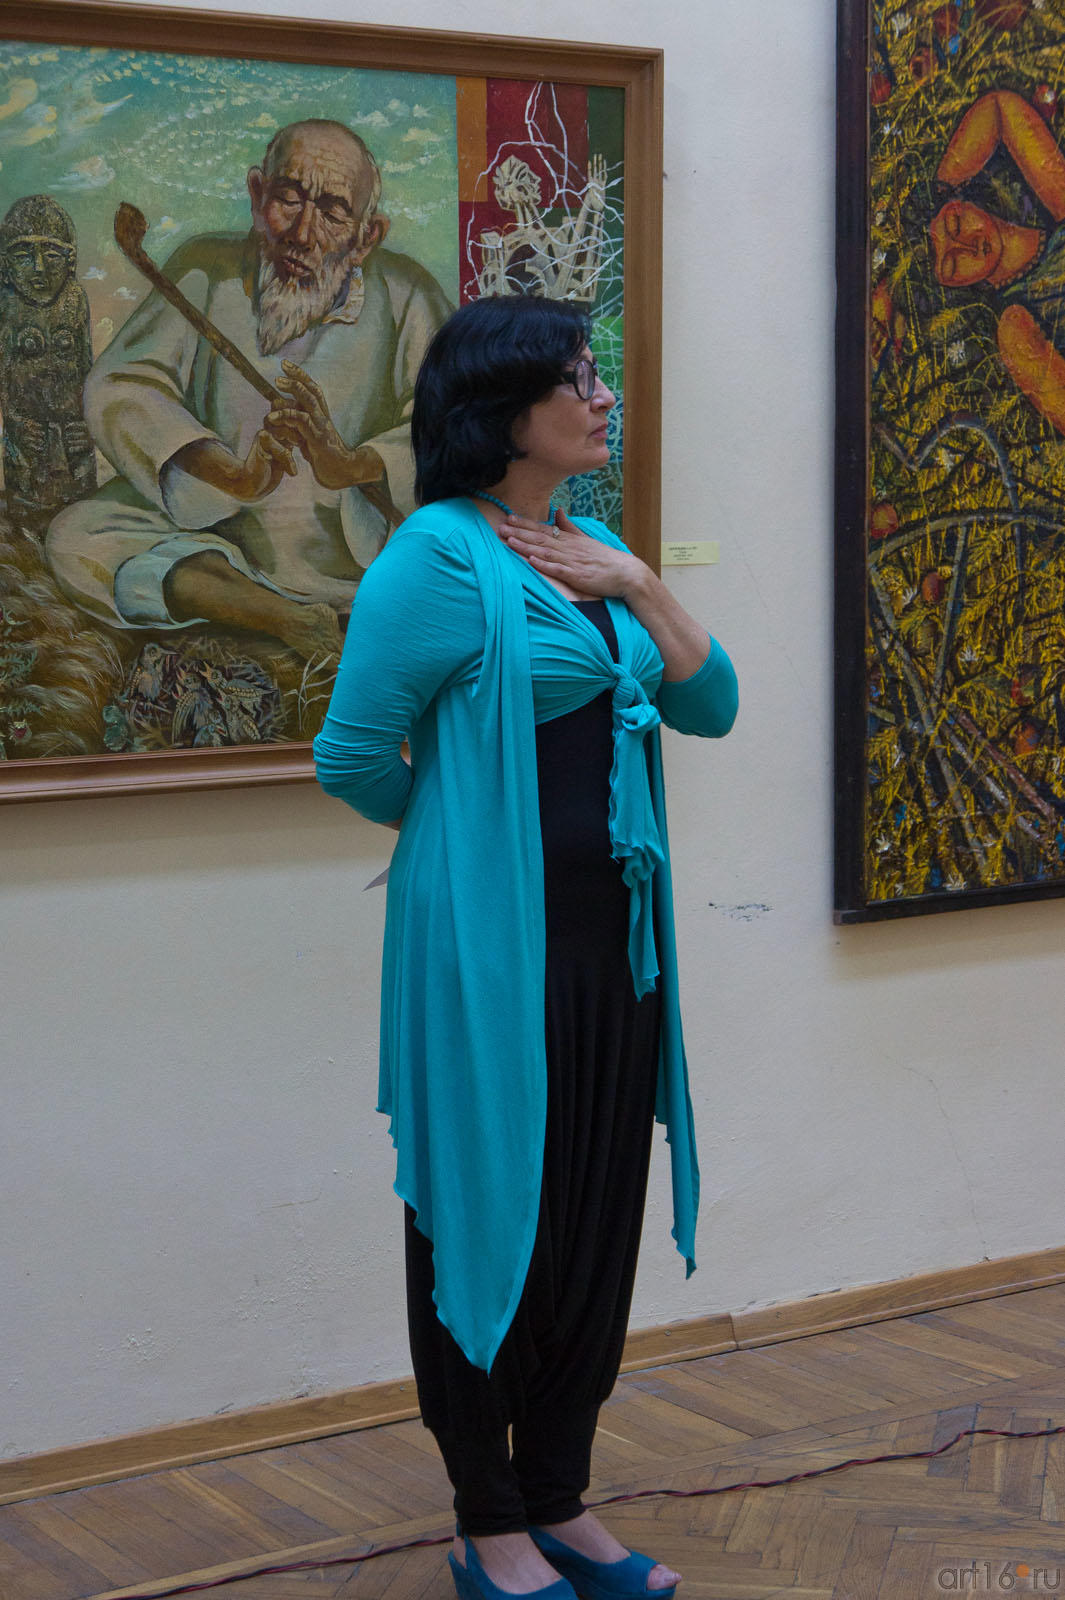 Розалия Миргалимовна Нургалеева, директор ГМИИ РТ::«Мир вокруг нас» — Республиканская выставка живописи, графики, ДПИ